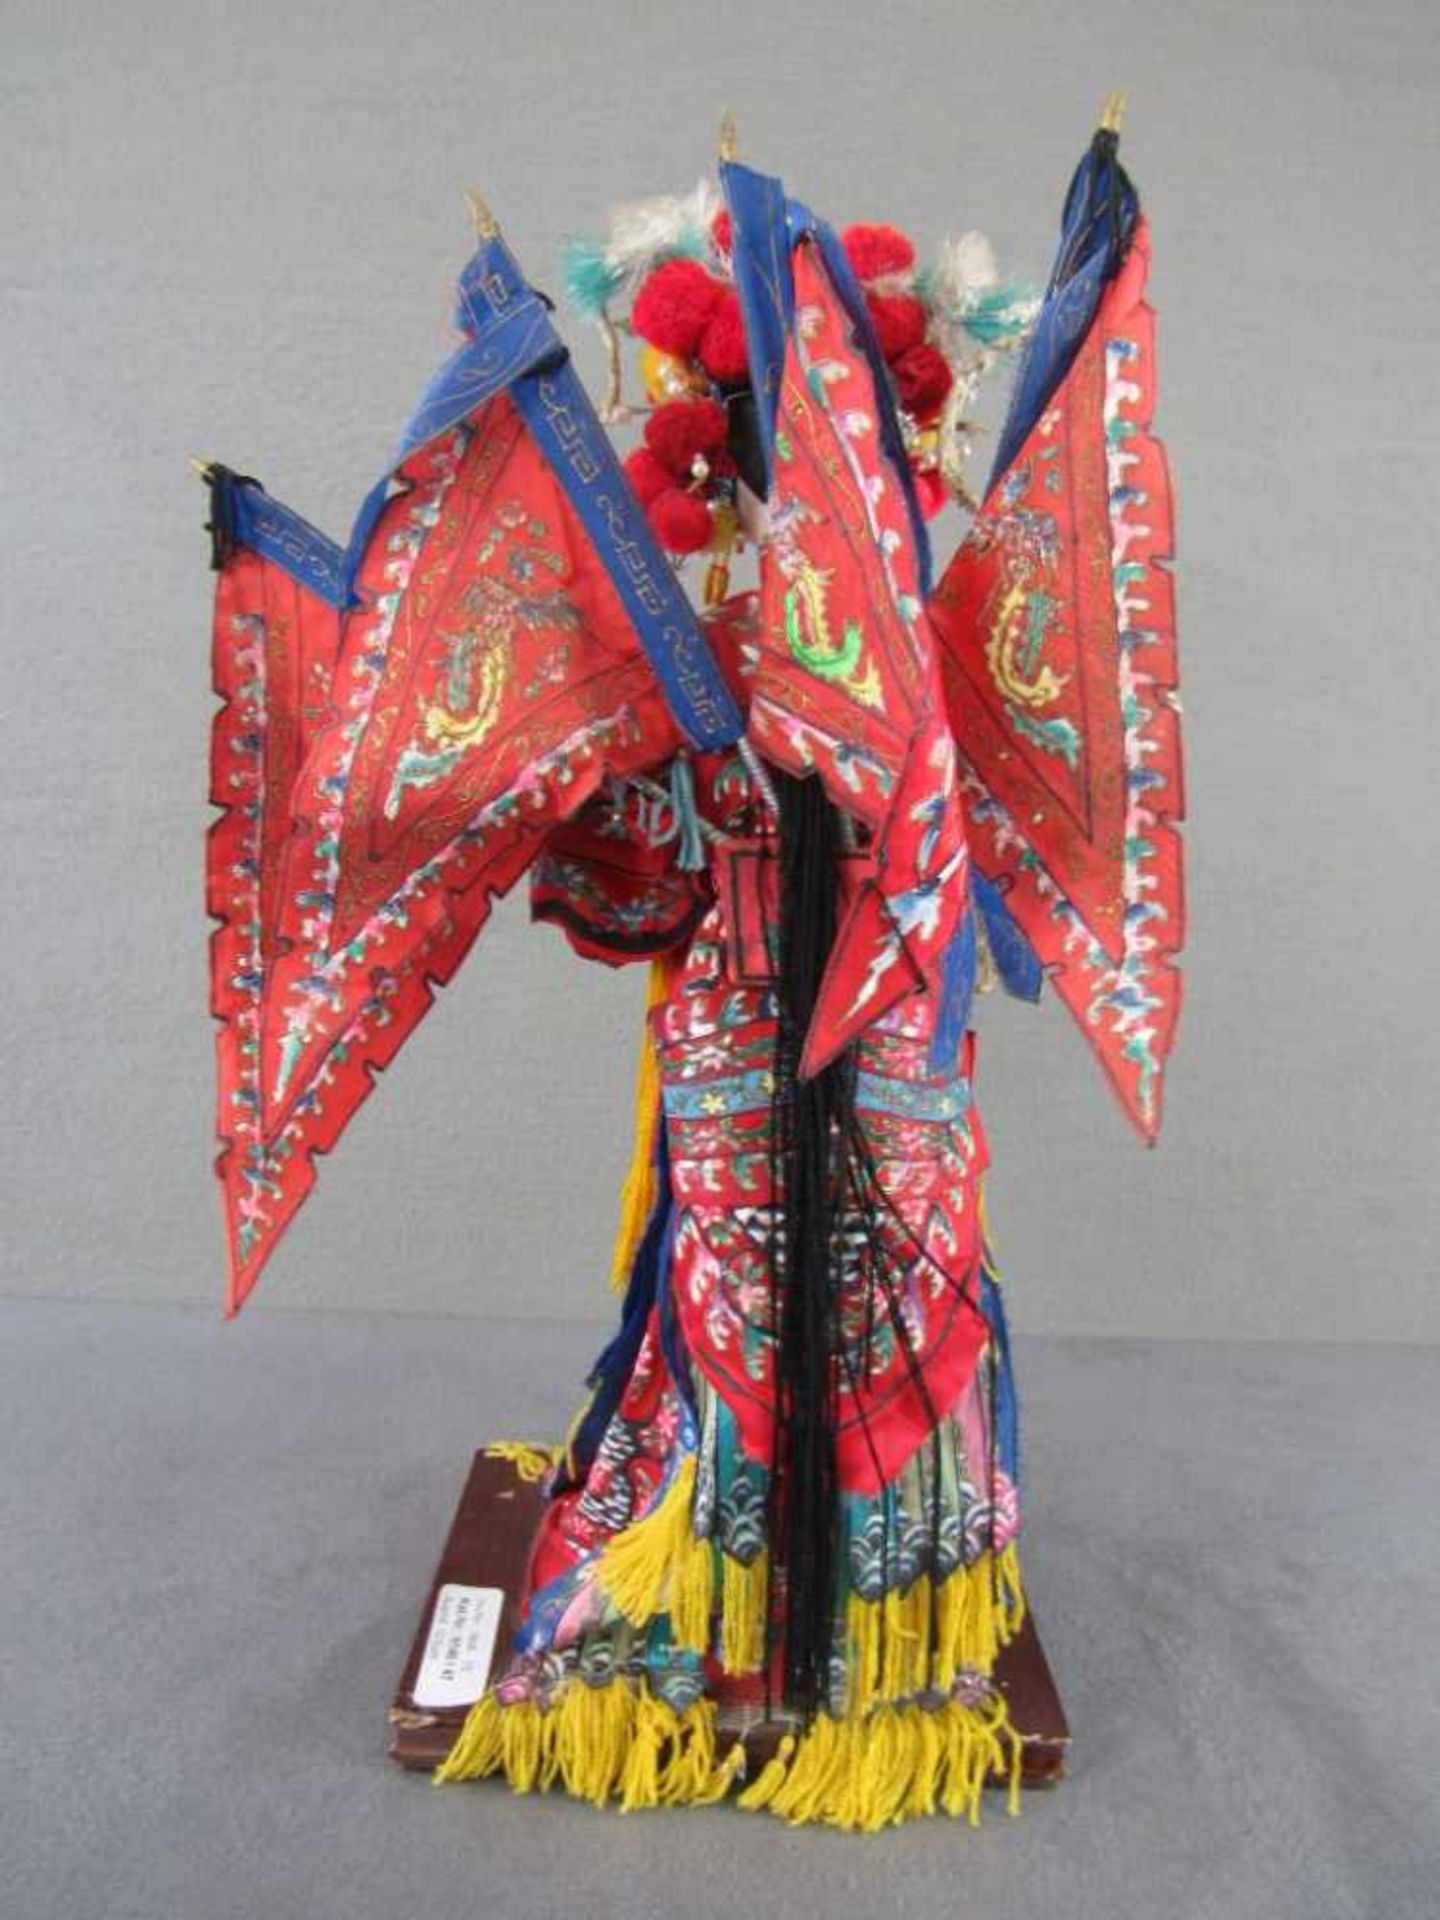 Japanische Hochzeitsfigur farbenfroh auf Holzsockel 43cm hoch - Image 5 of 6